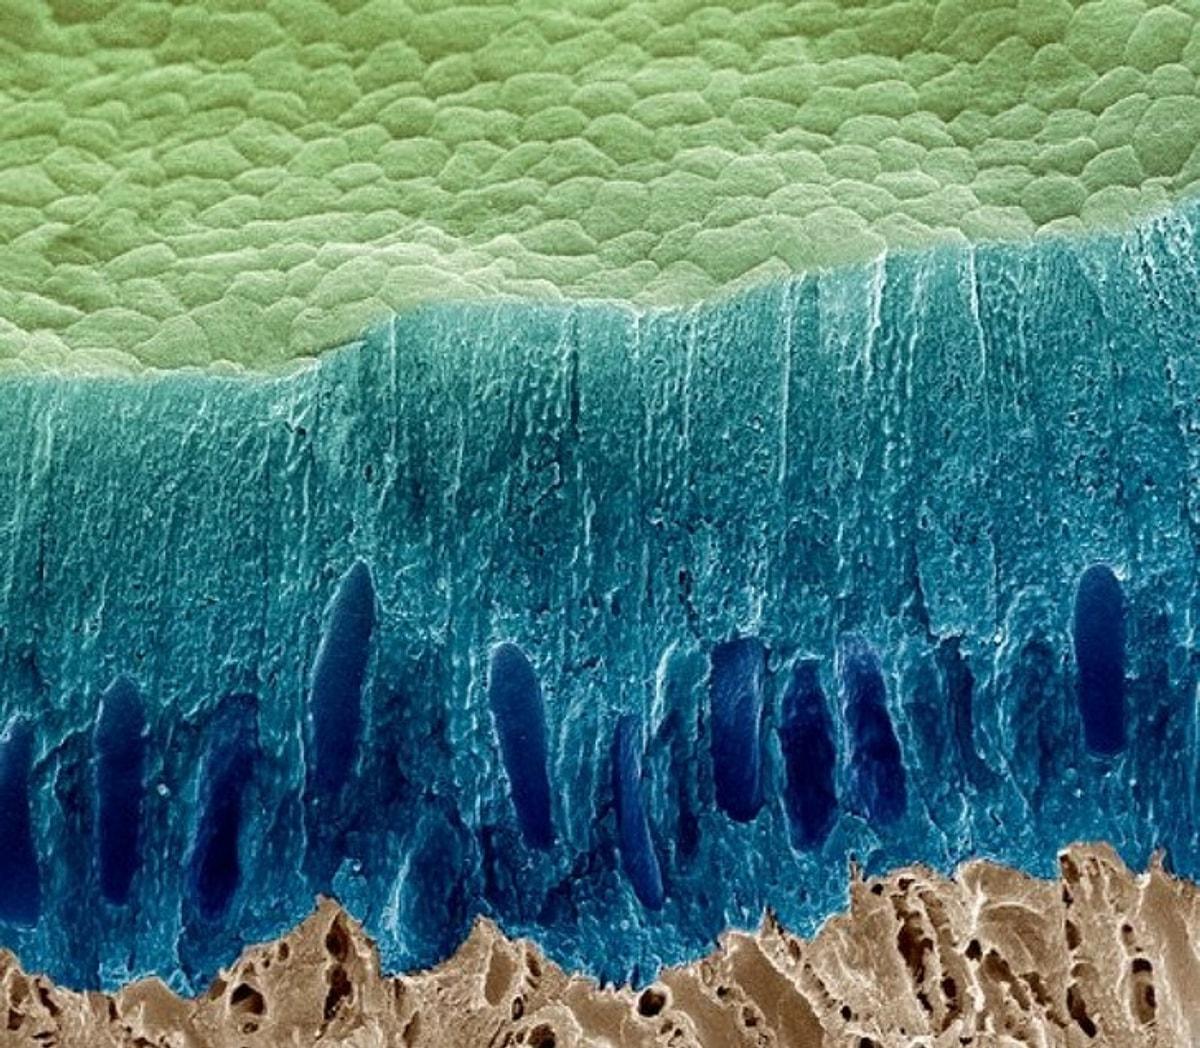 Слизистые покровы или гладкая поверхность. Кариес под микроскопом бактерии. Деттин под микроскопом. Эмаль зуба под микроскопом. Зубная эмаль под микроскопом.